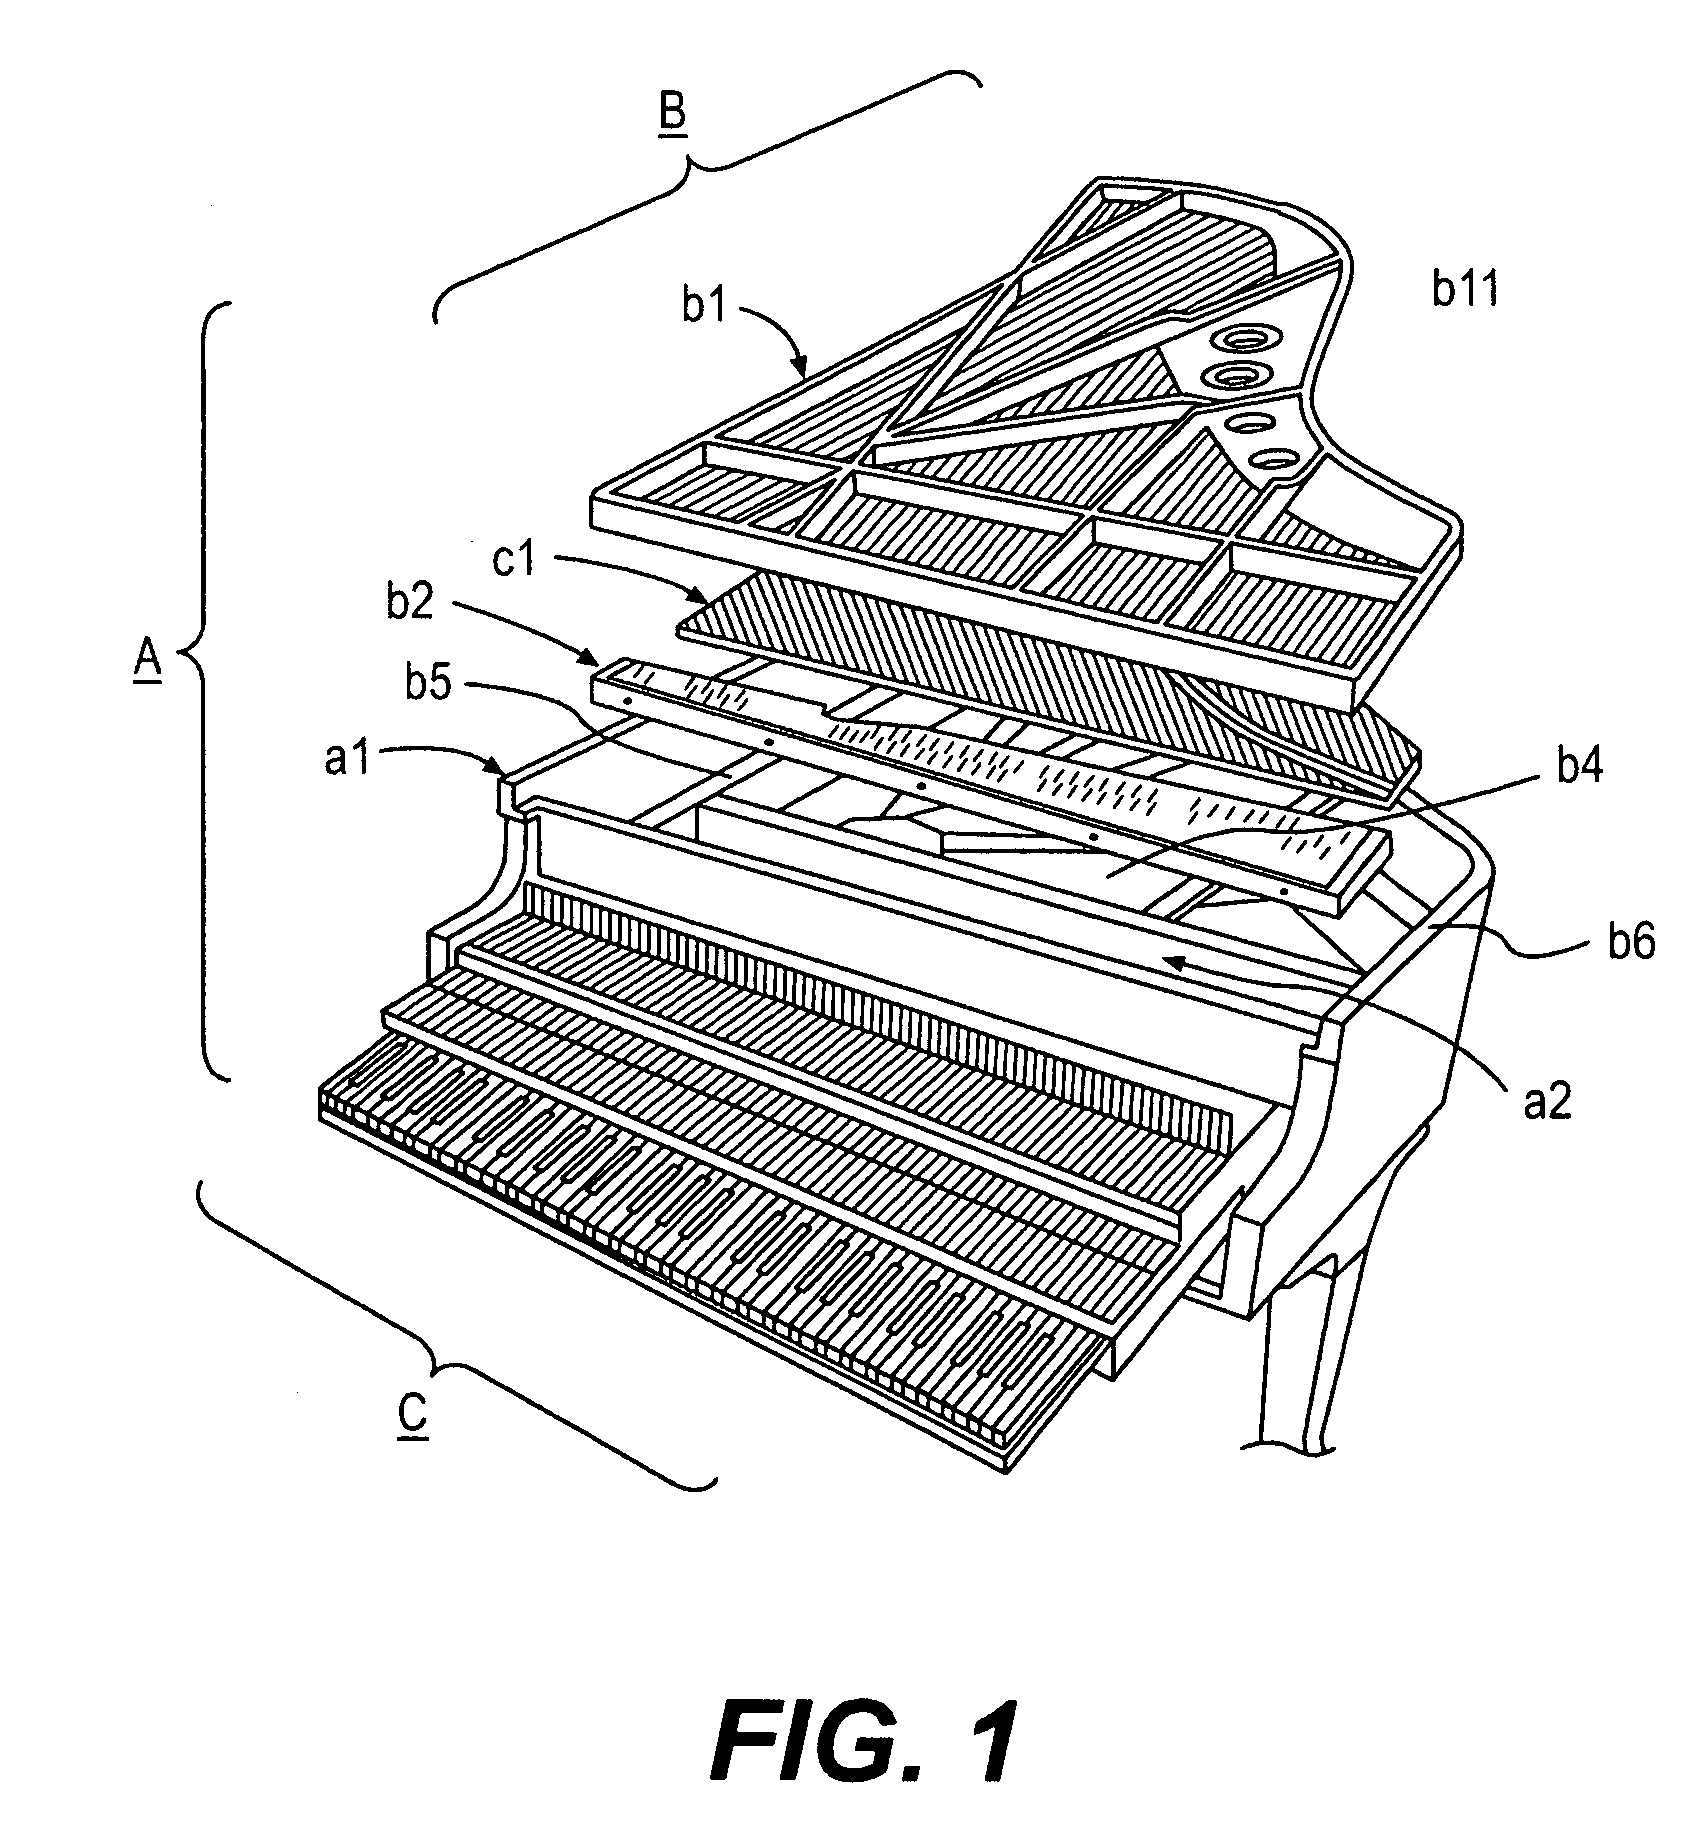 Pickup apparatus of piano